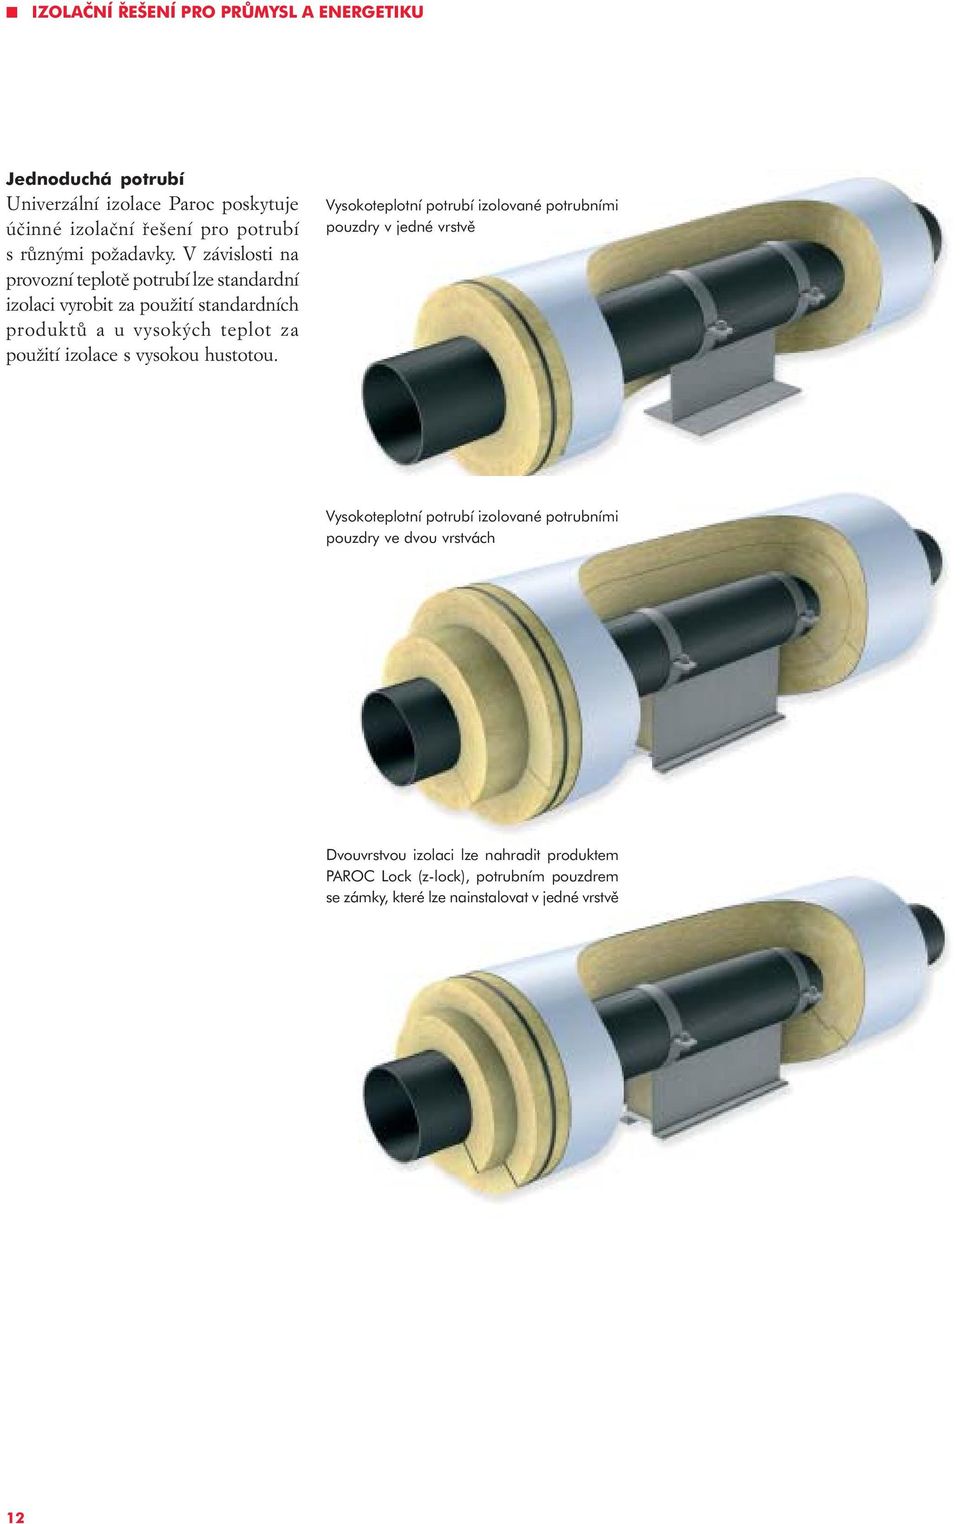 V závislosti na provozní teplotì potrubí lze standardní izolaci vyrobit za použití standardních produktù a u vysokých teplot za použití izolace s